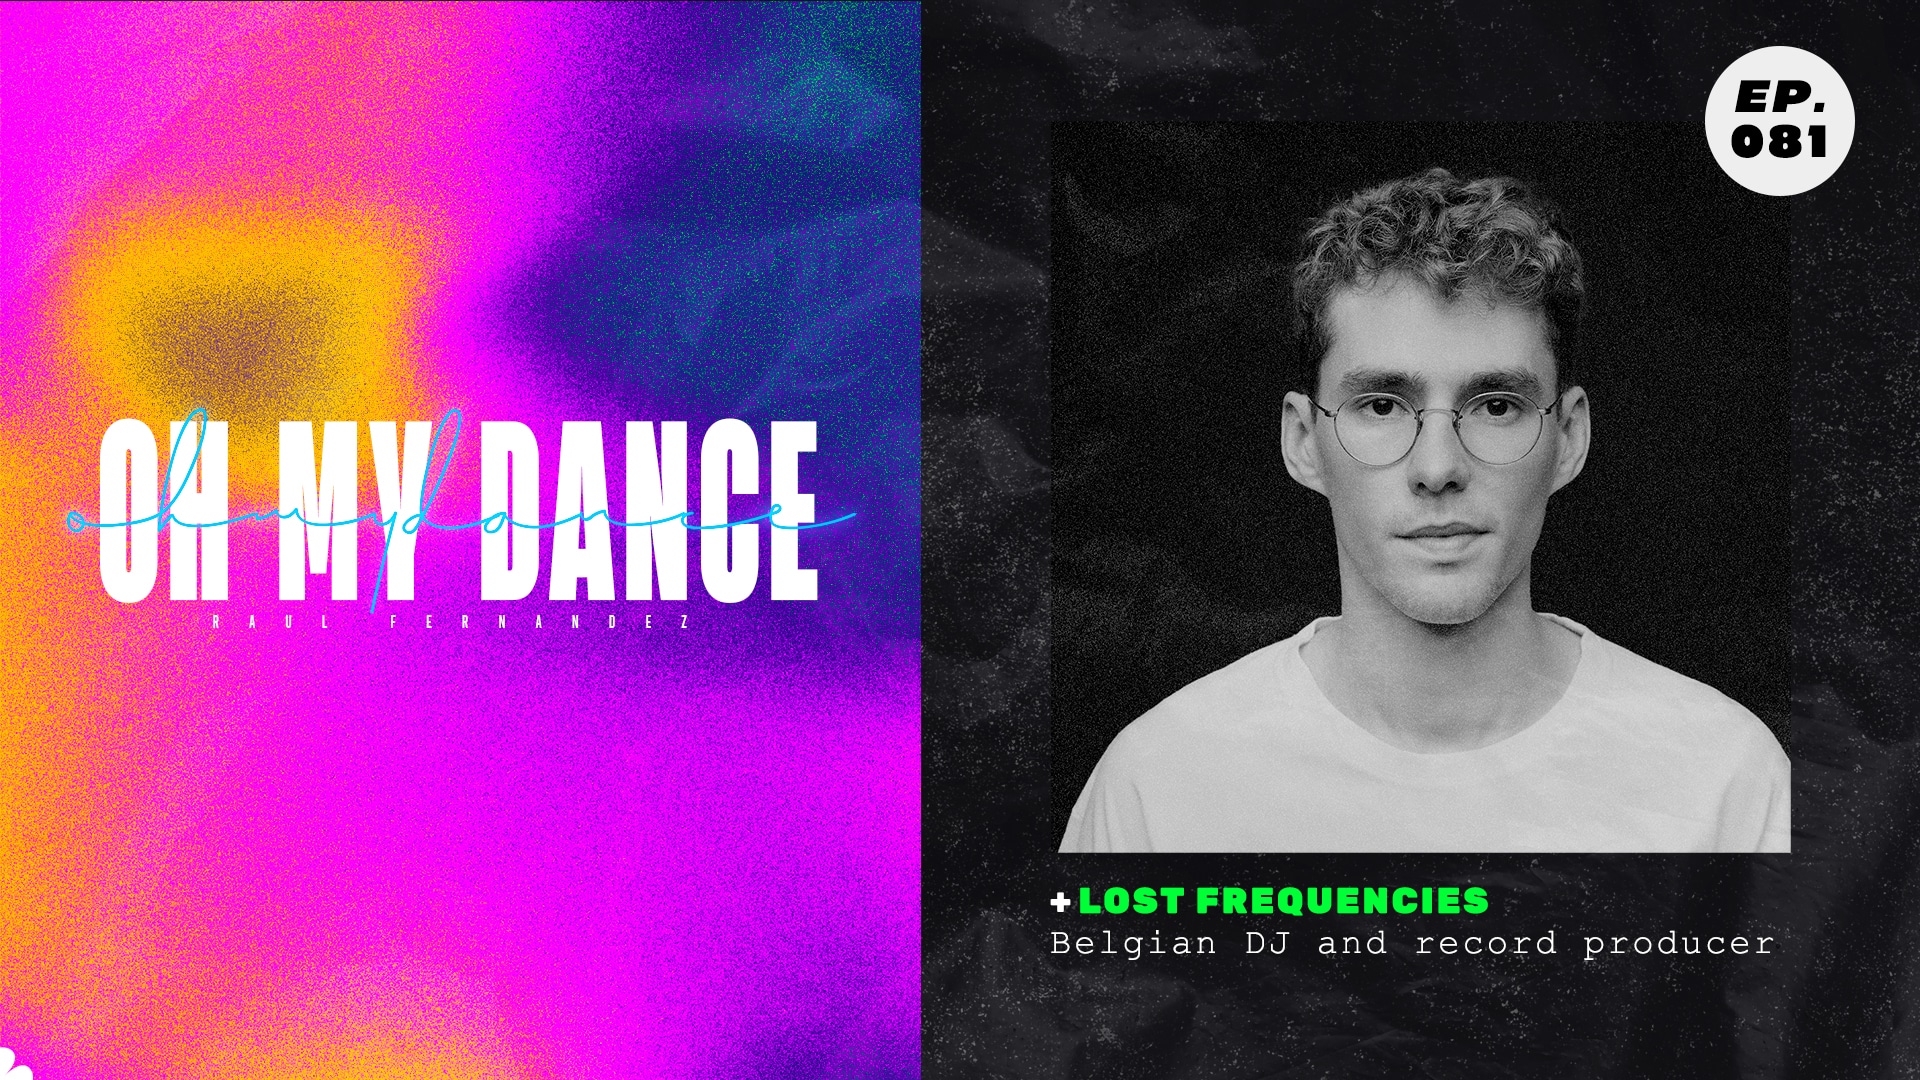 El productor belga Lost Frequencies ha publicado nuevo álbum y por eso se ha convertido en protagonista de nuestro Ep.81 de OHMYDANCE.